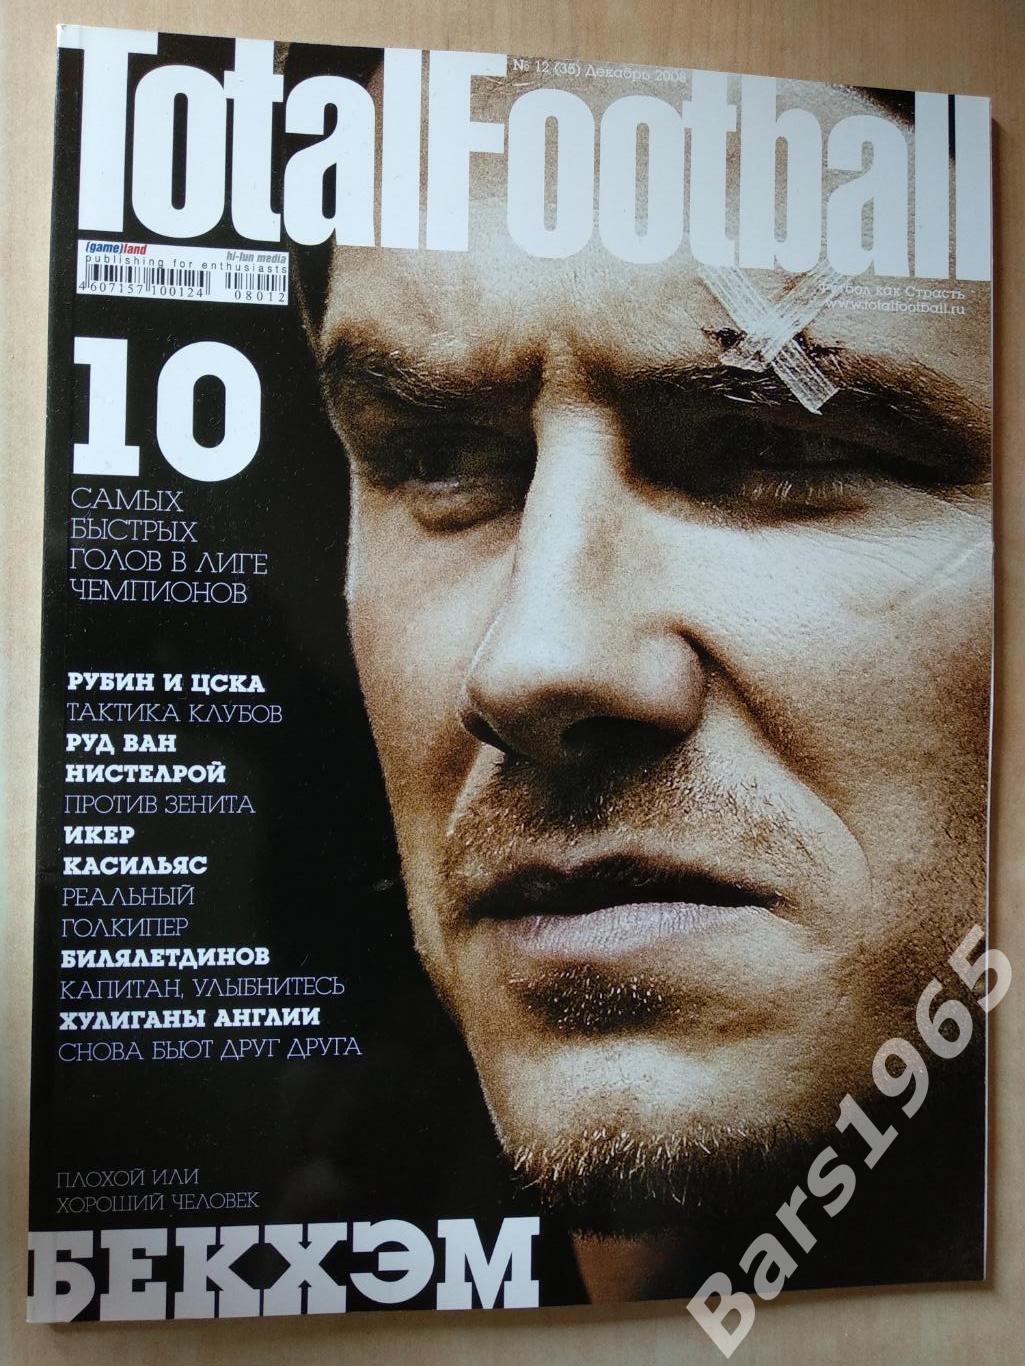 Total Football № 12 (35) 2008 с постером Весли Снайдер и Фернандо Торрес